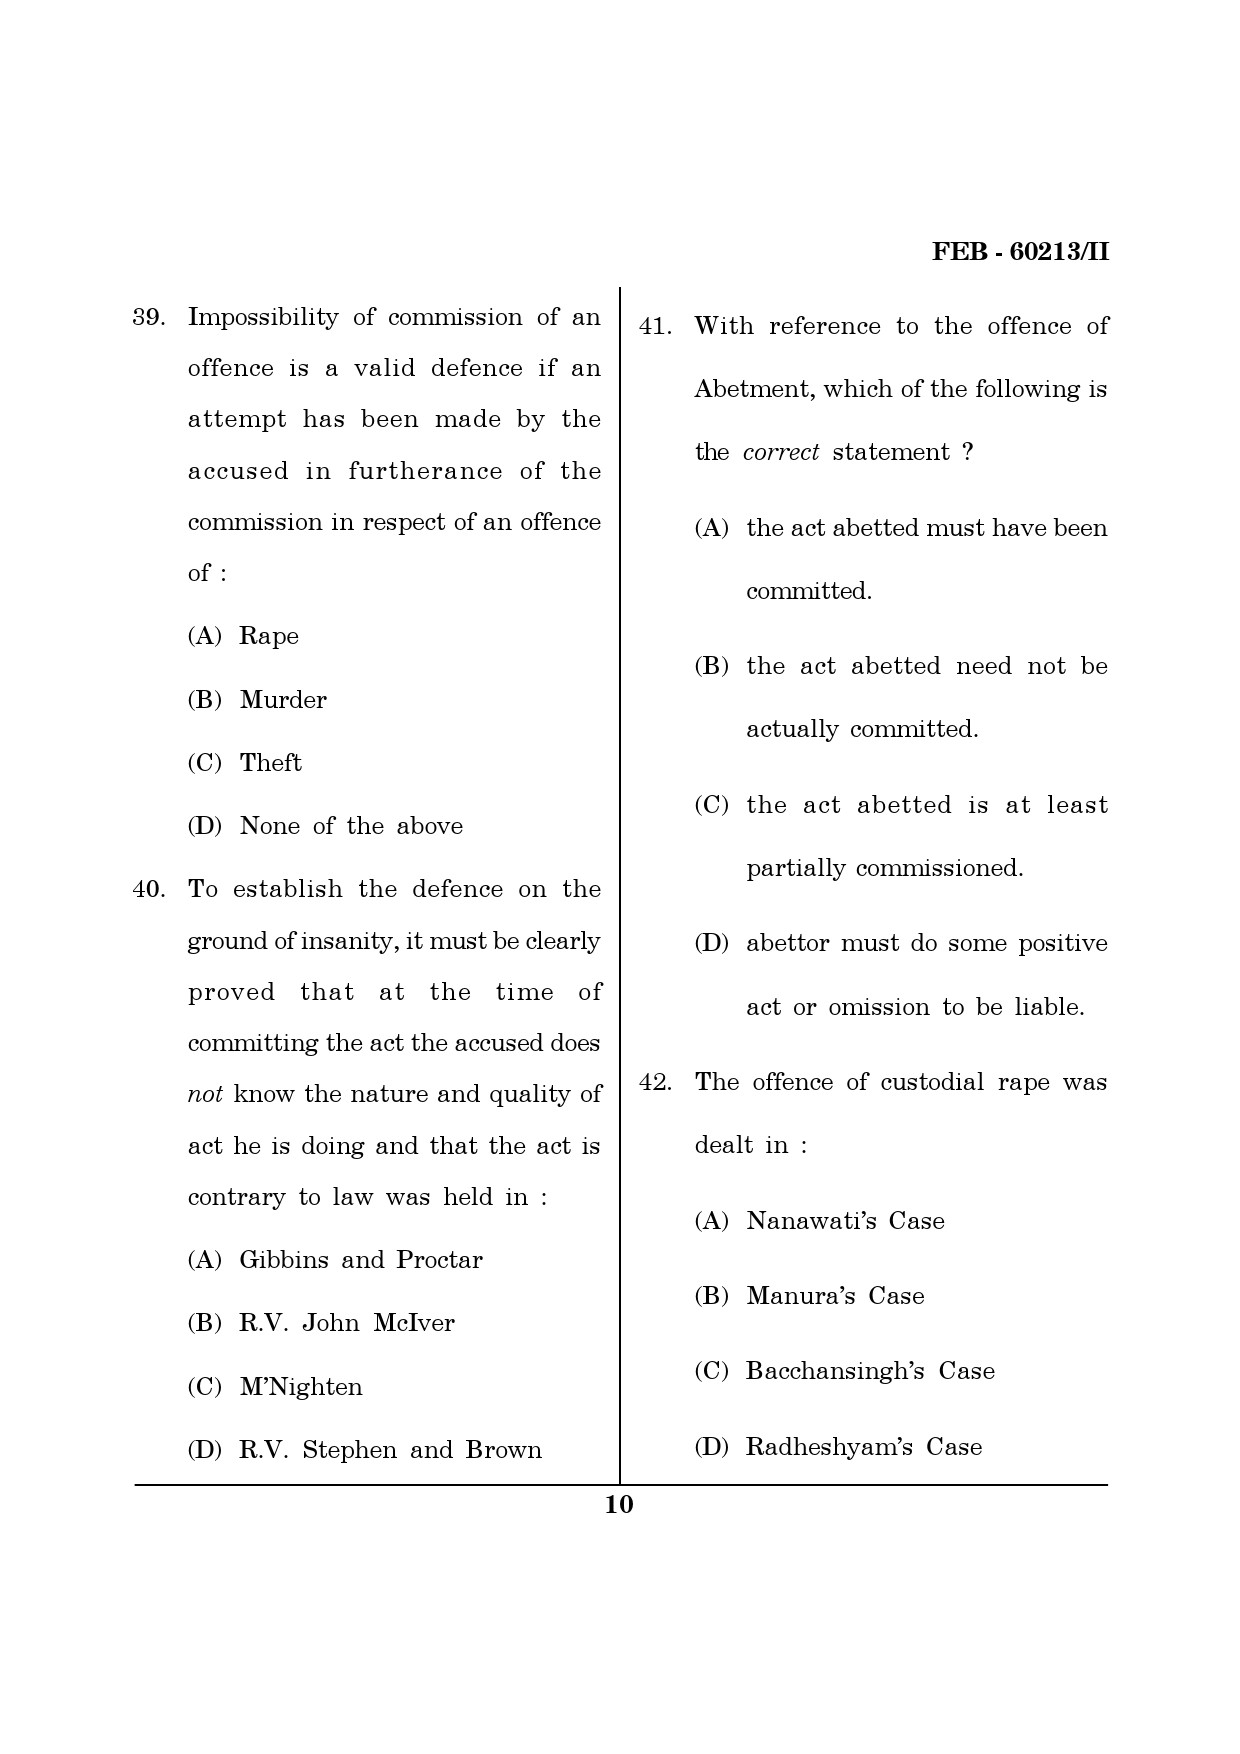 Maharashtra SET Law Question Paper II February 2013 10